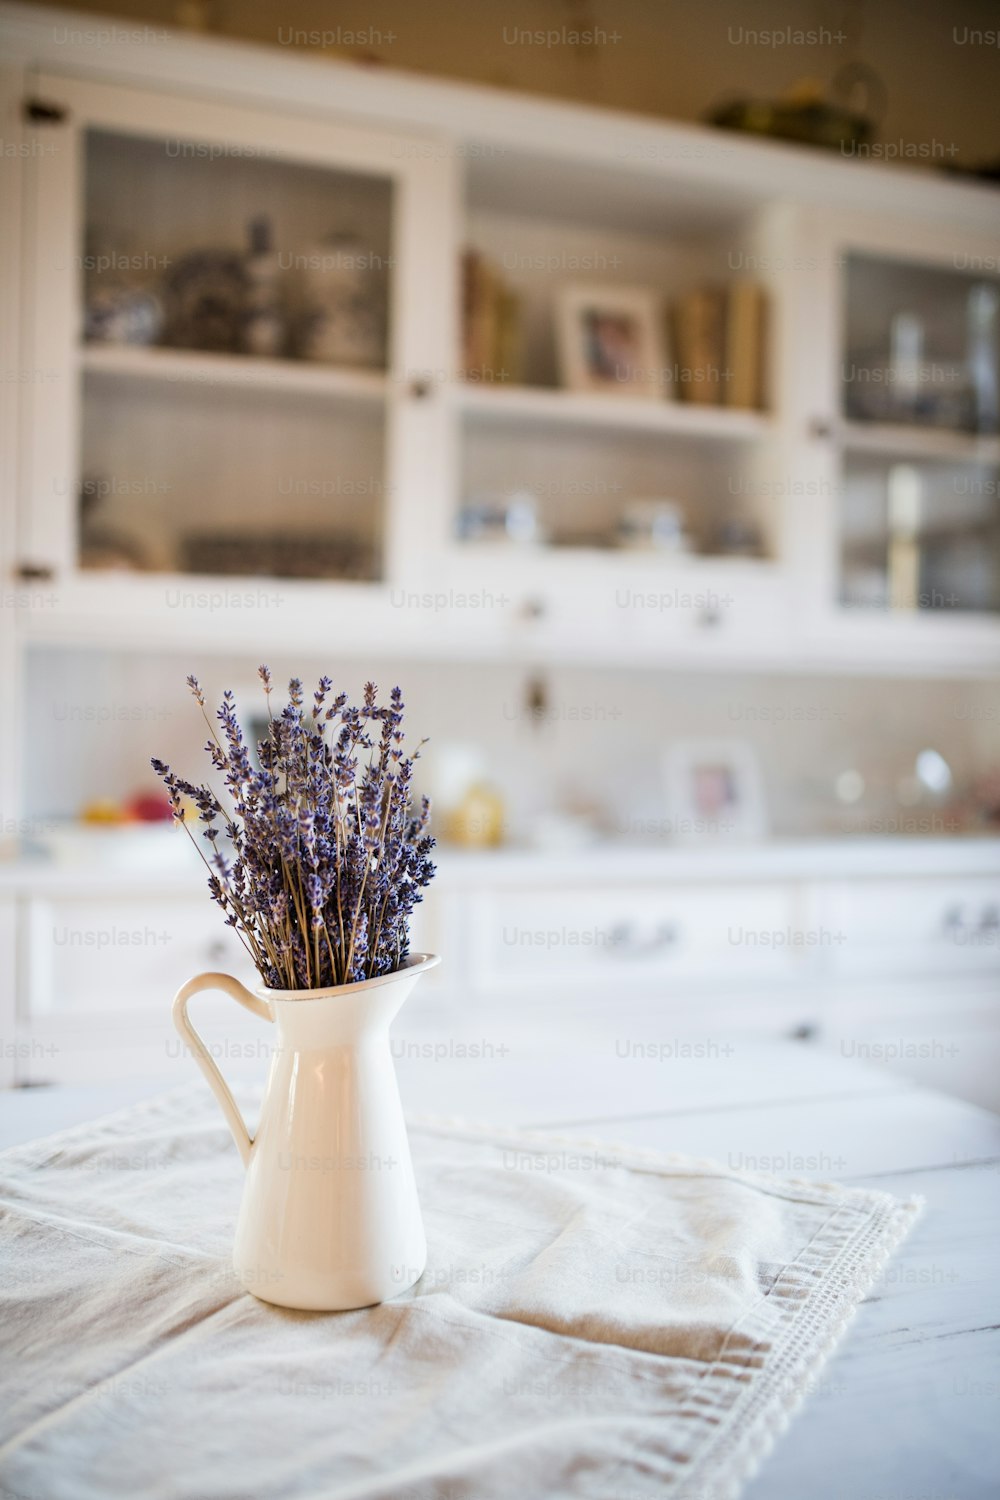 Racimo de lavanda seca en un jarrón blanco sobre la mesa de una cocina vintage.